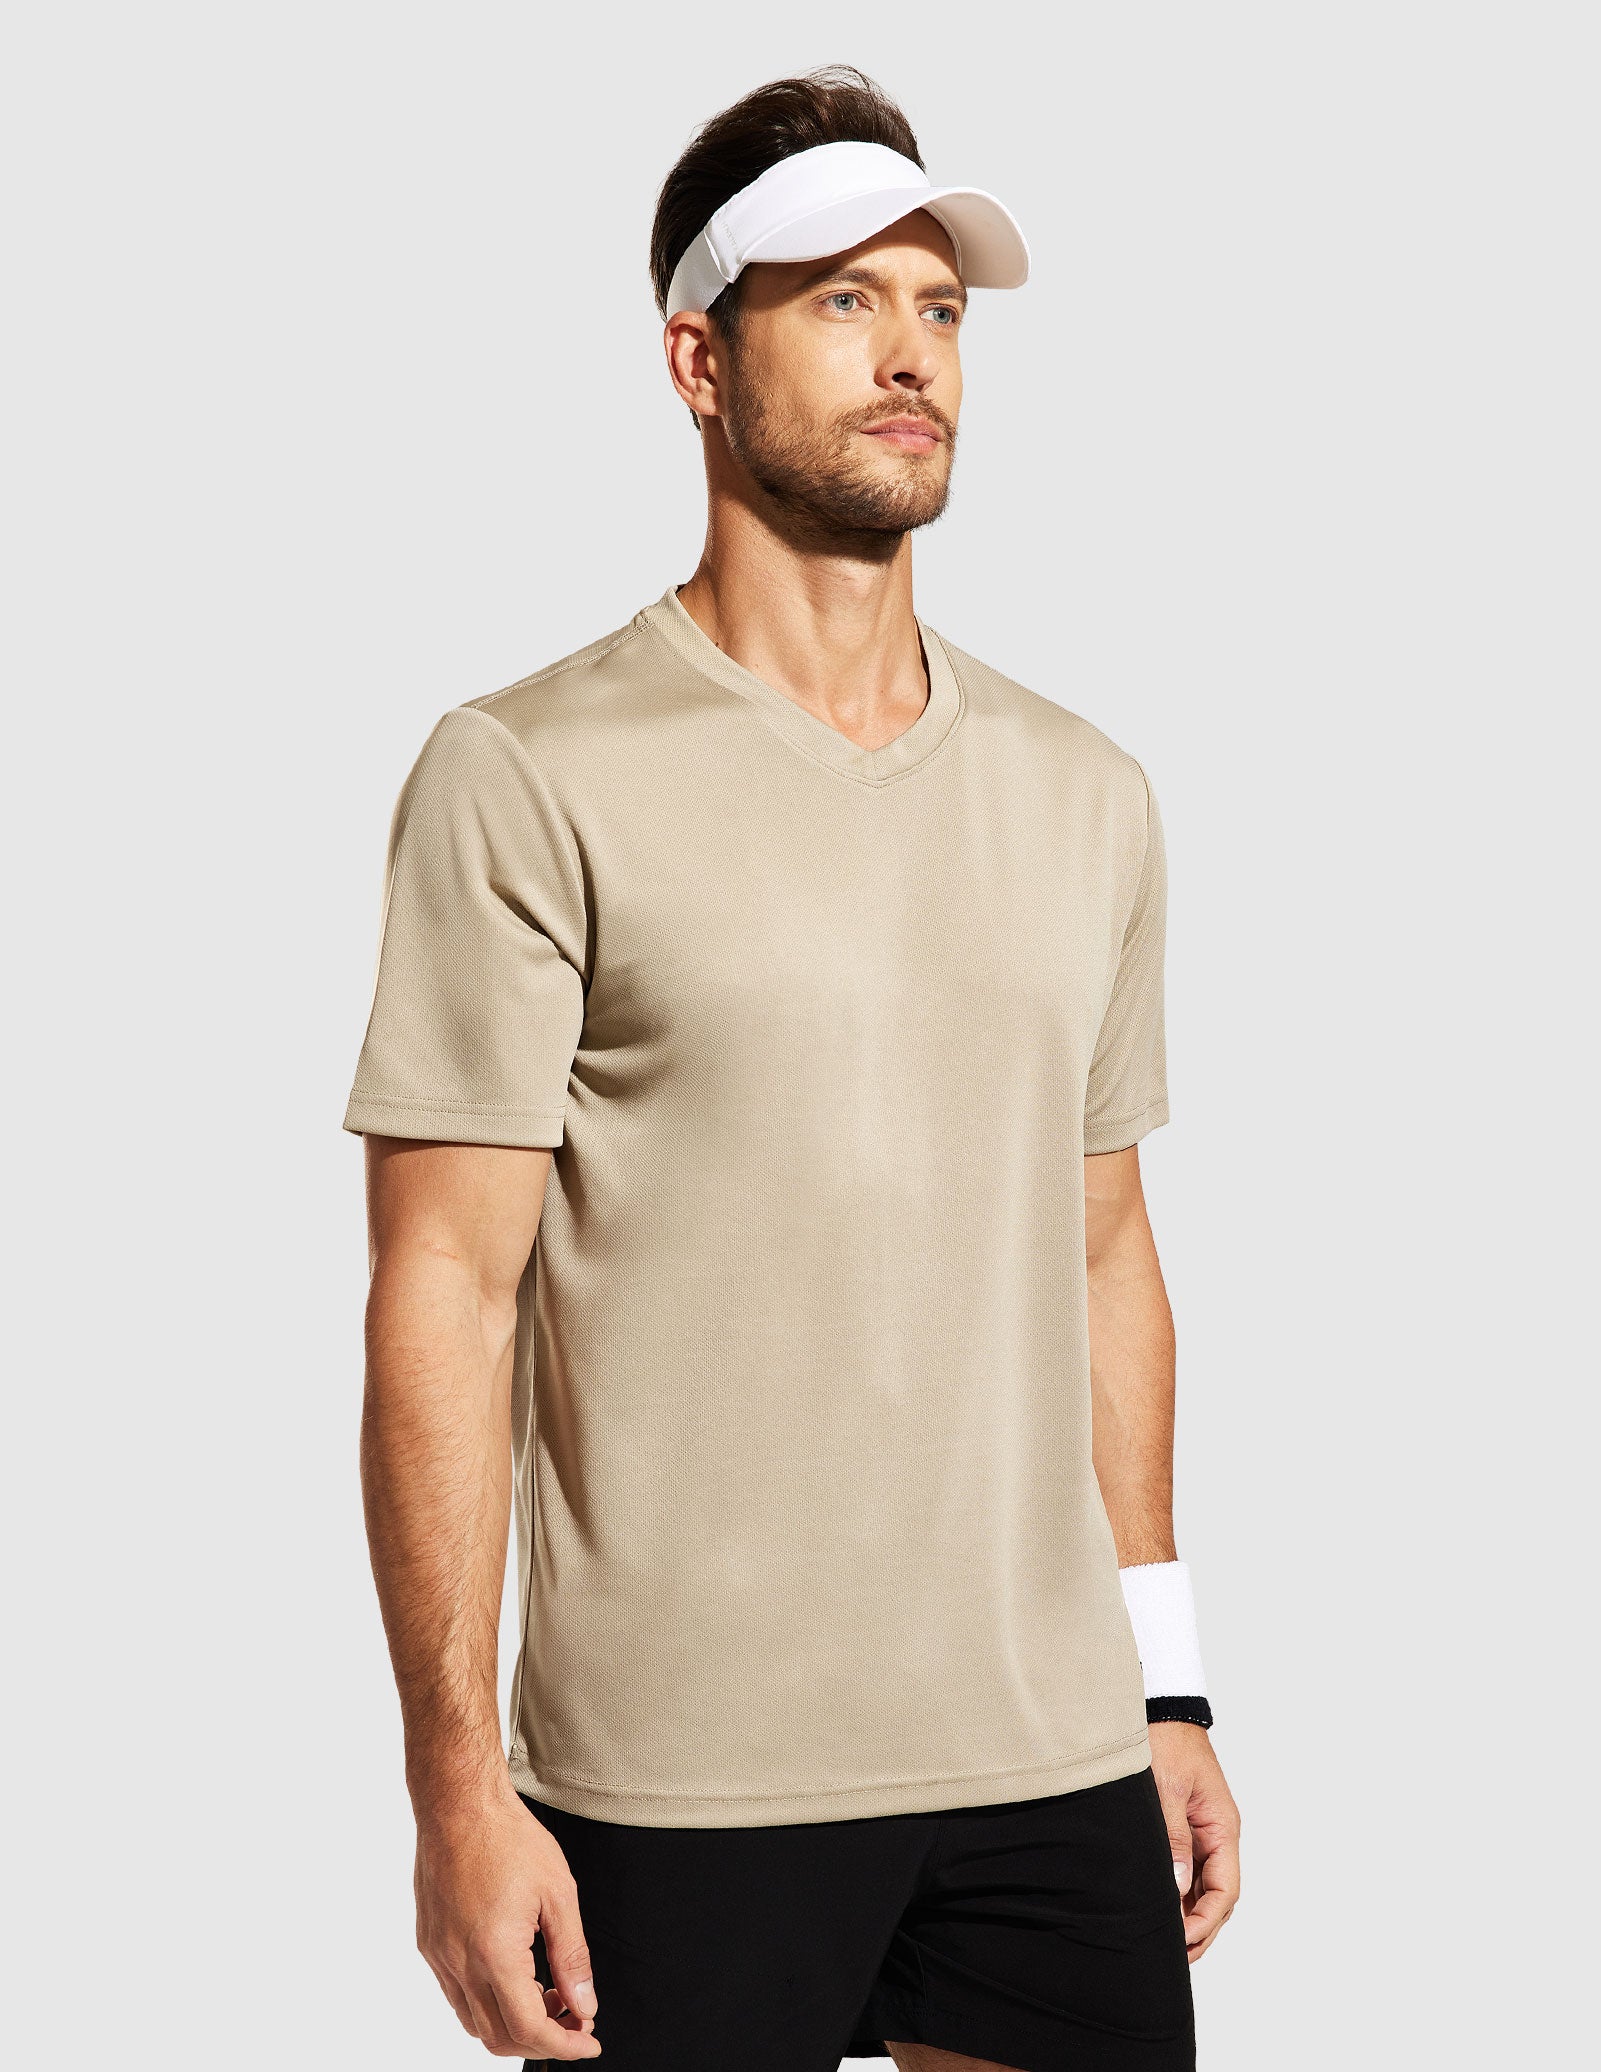 Camisetas deportivas de secado rápido para hombre Camisetas de entrenamiento con cuello en V